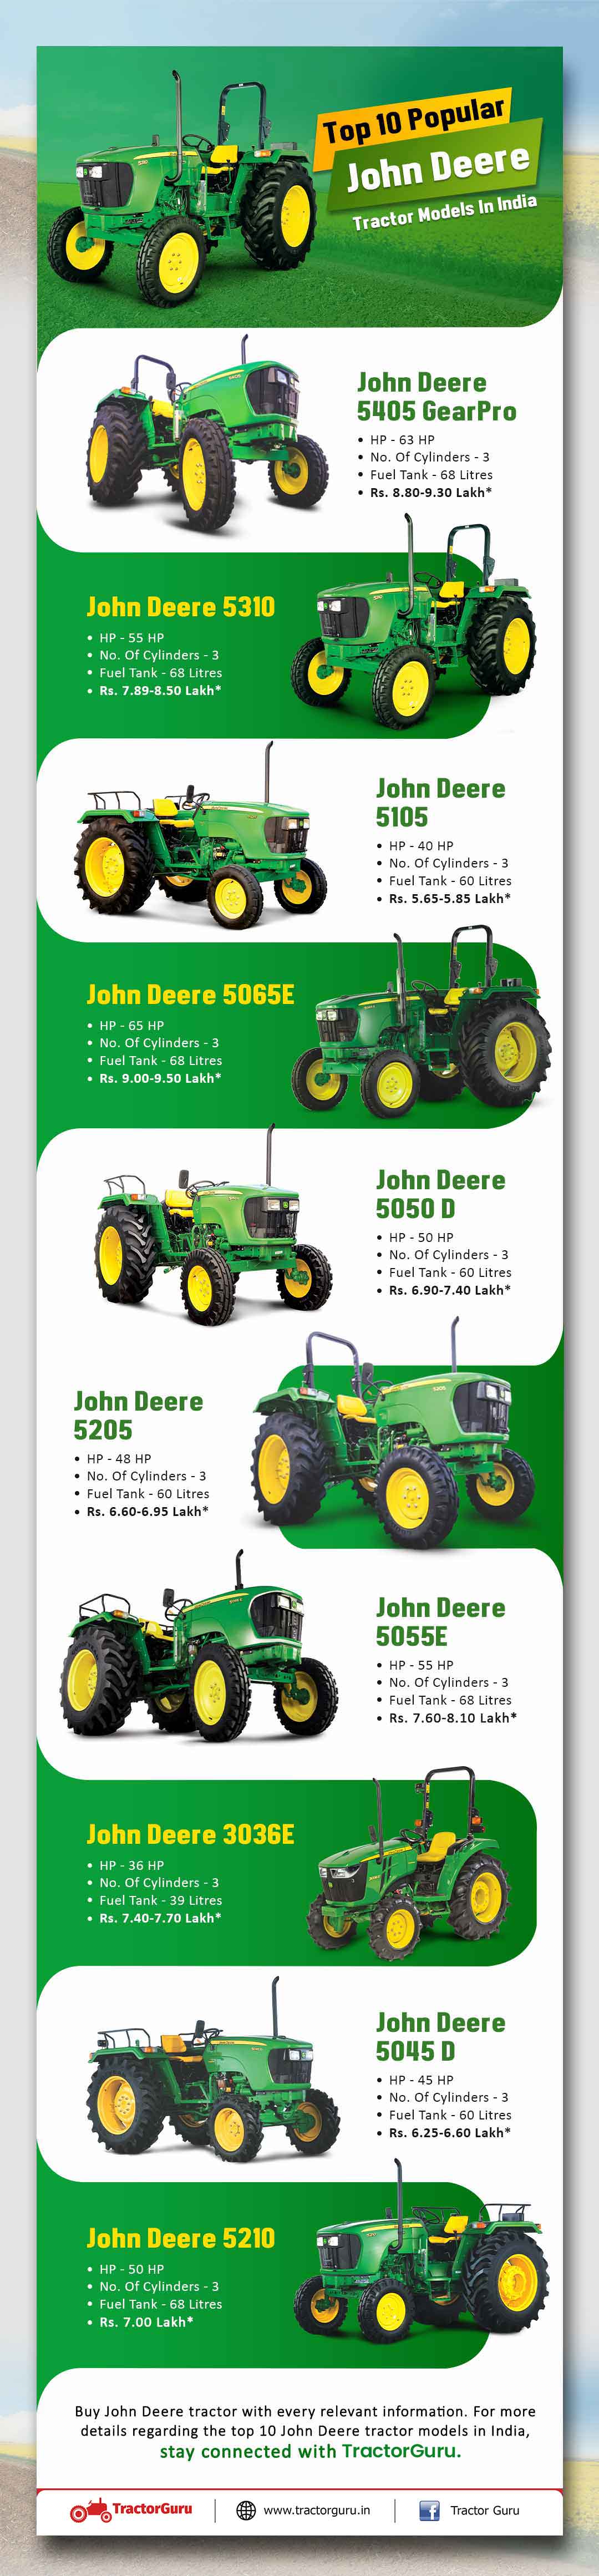 Top 10 Popular John Deere Tractor Models